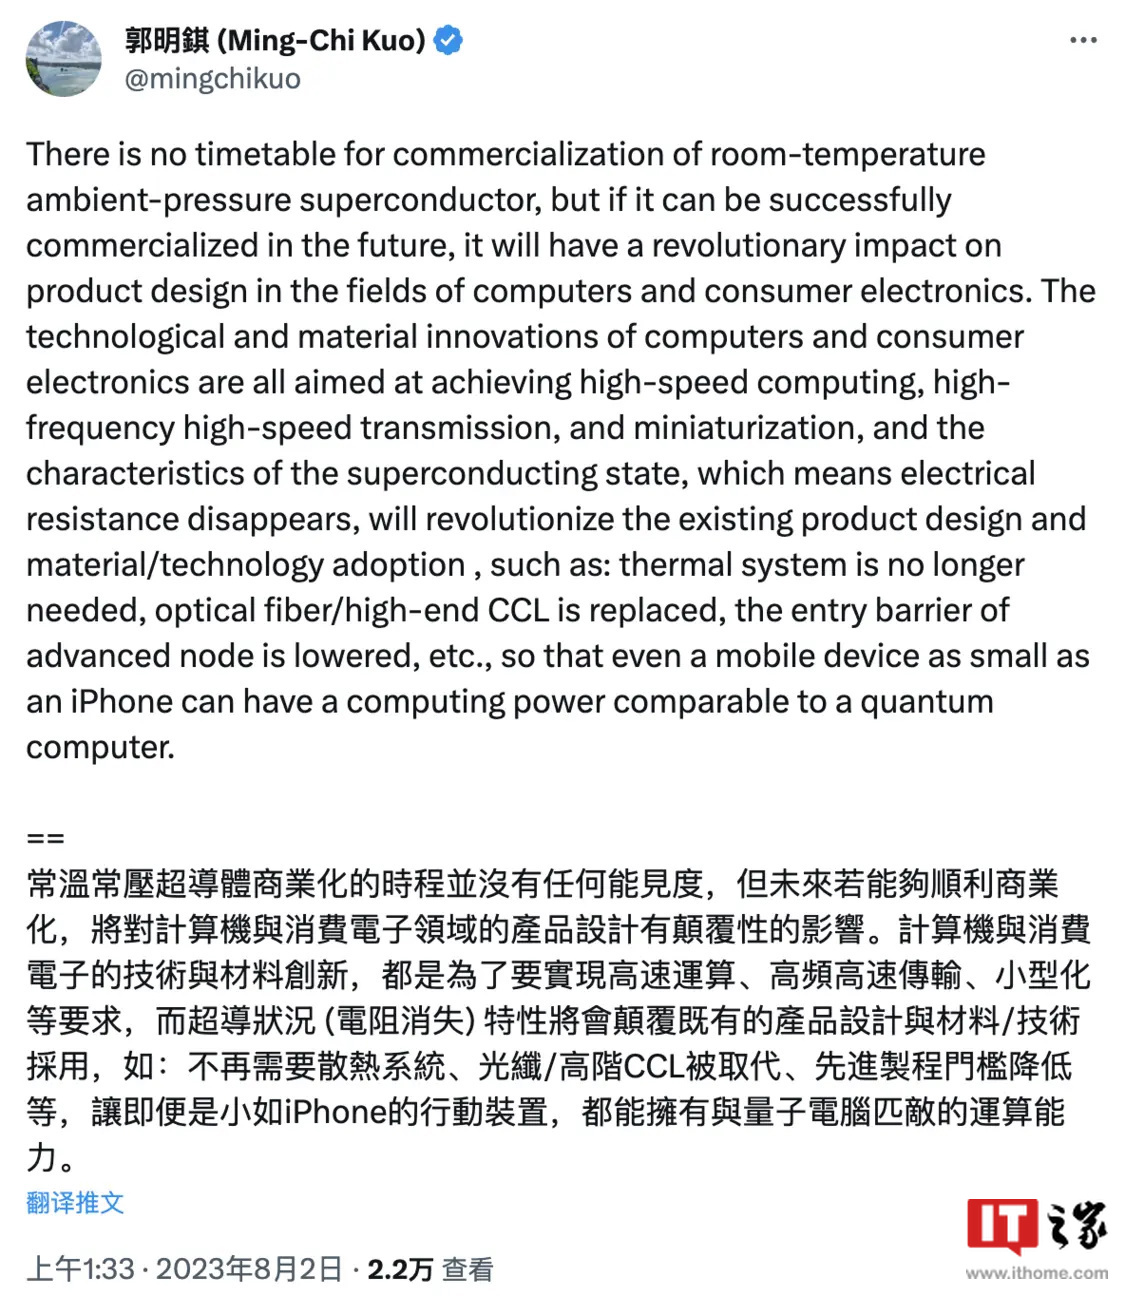 郭明錤：常温超导体未来将颠覆电子产品设计，iPhone 可匹敌量子计算机